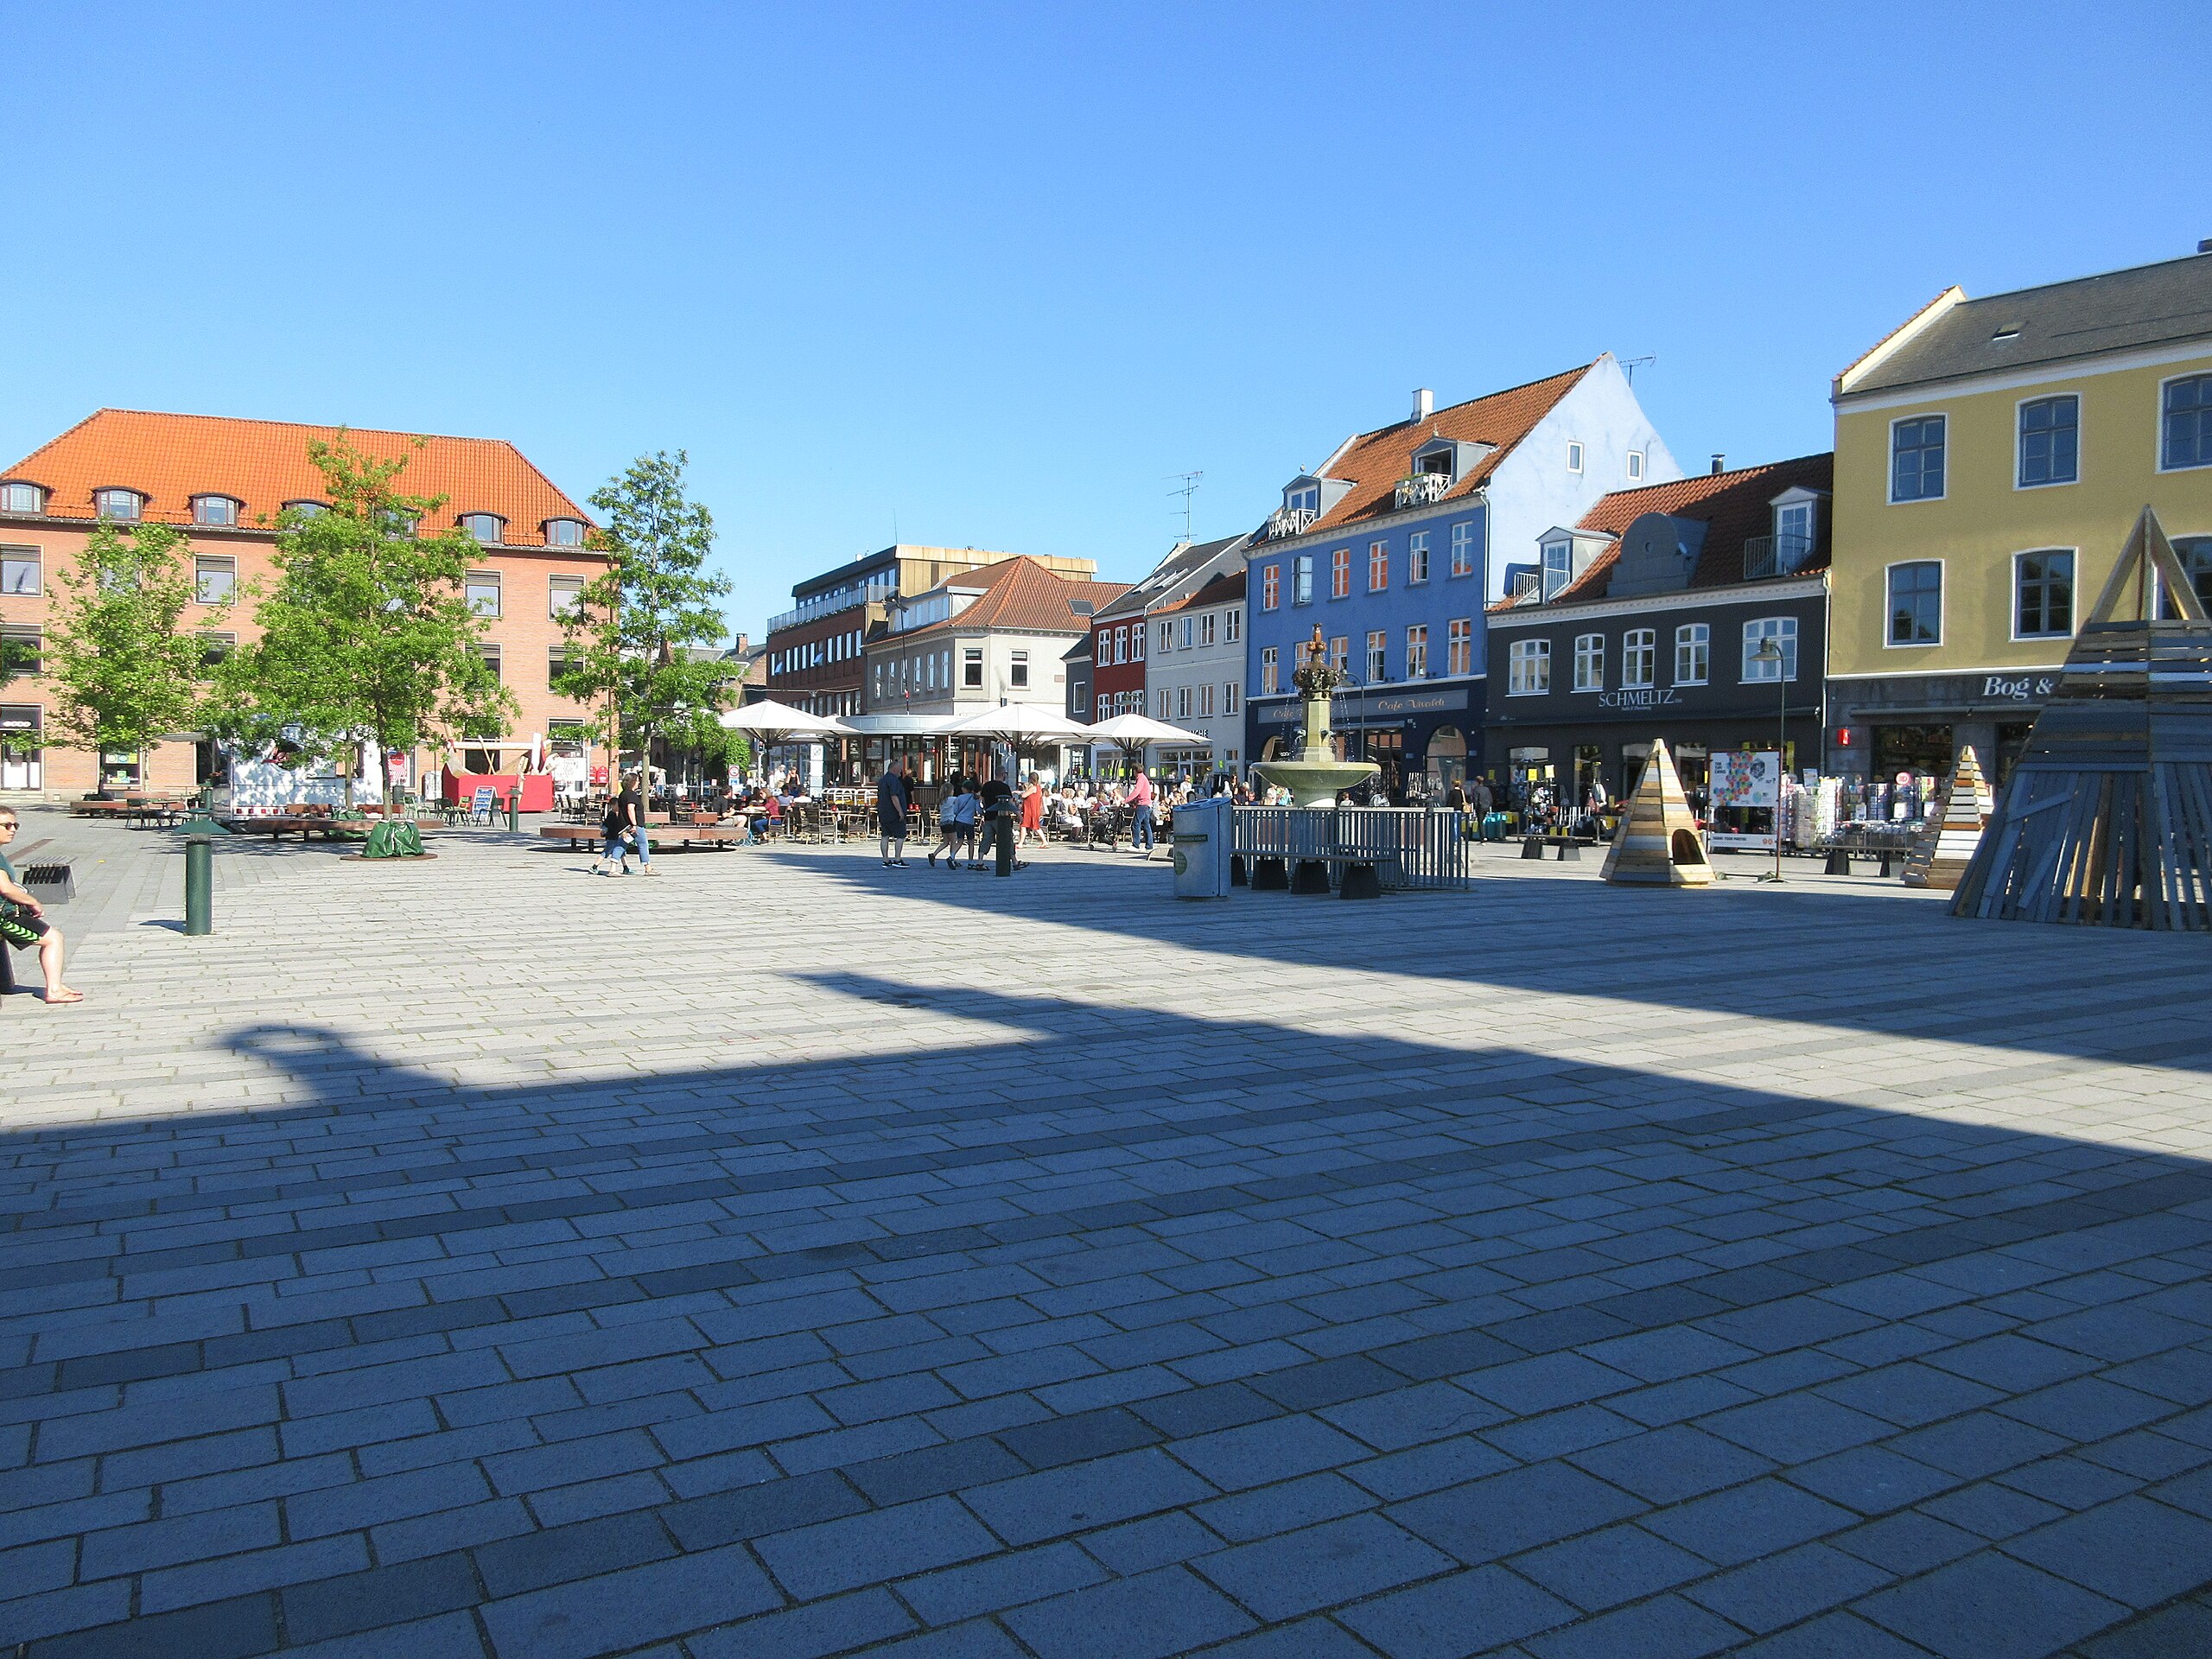 (Roskilde).jpg Wikimedia Commons